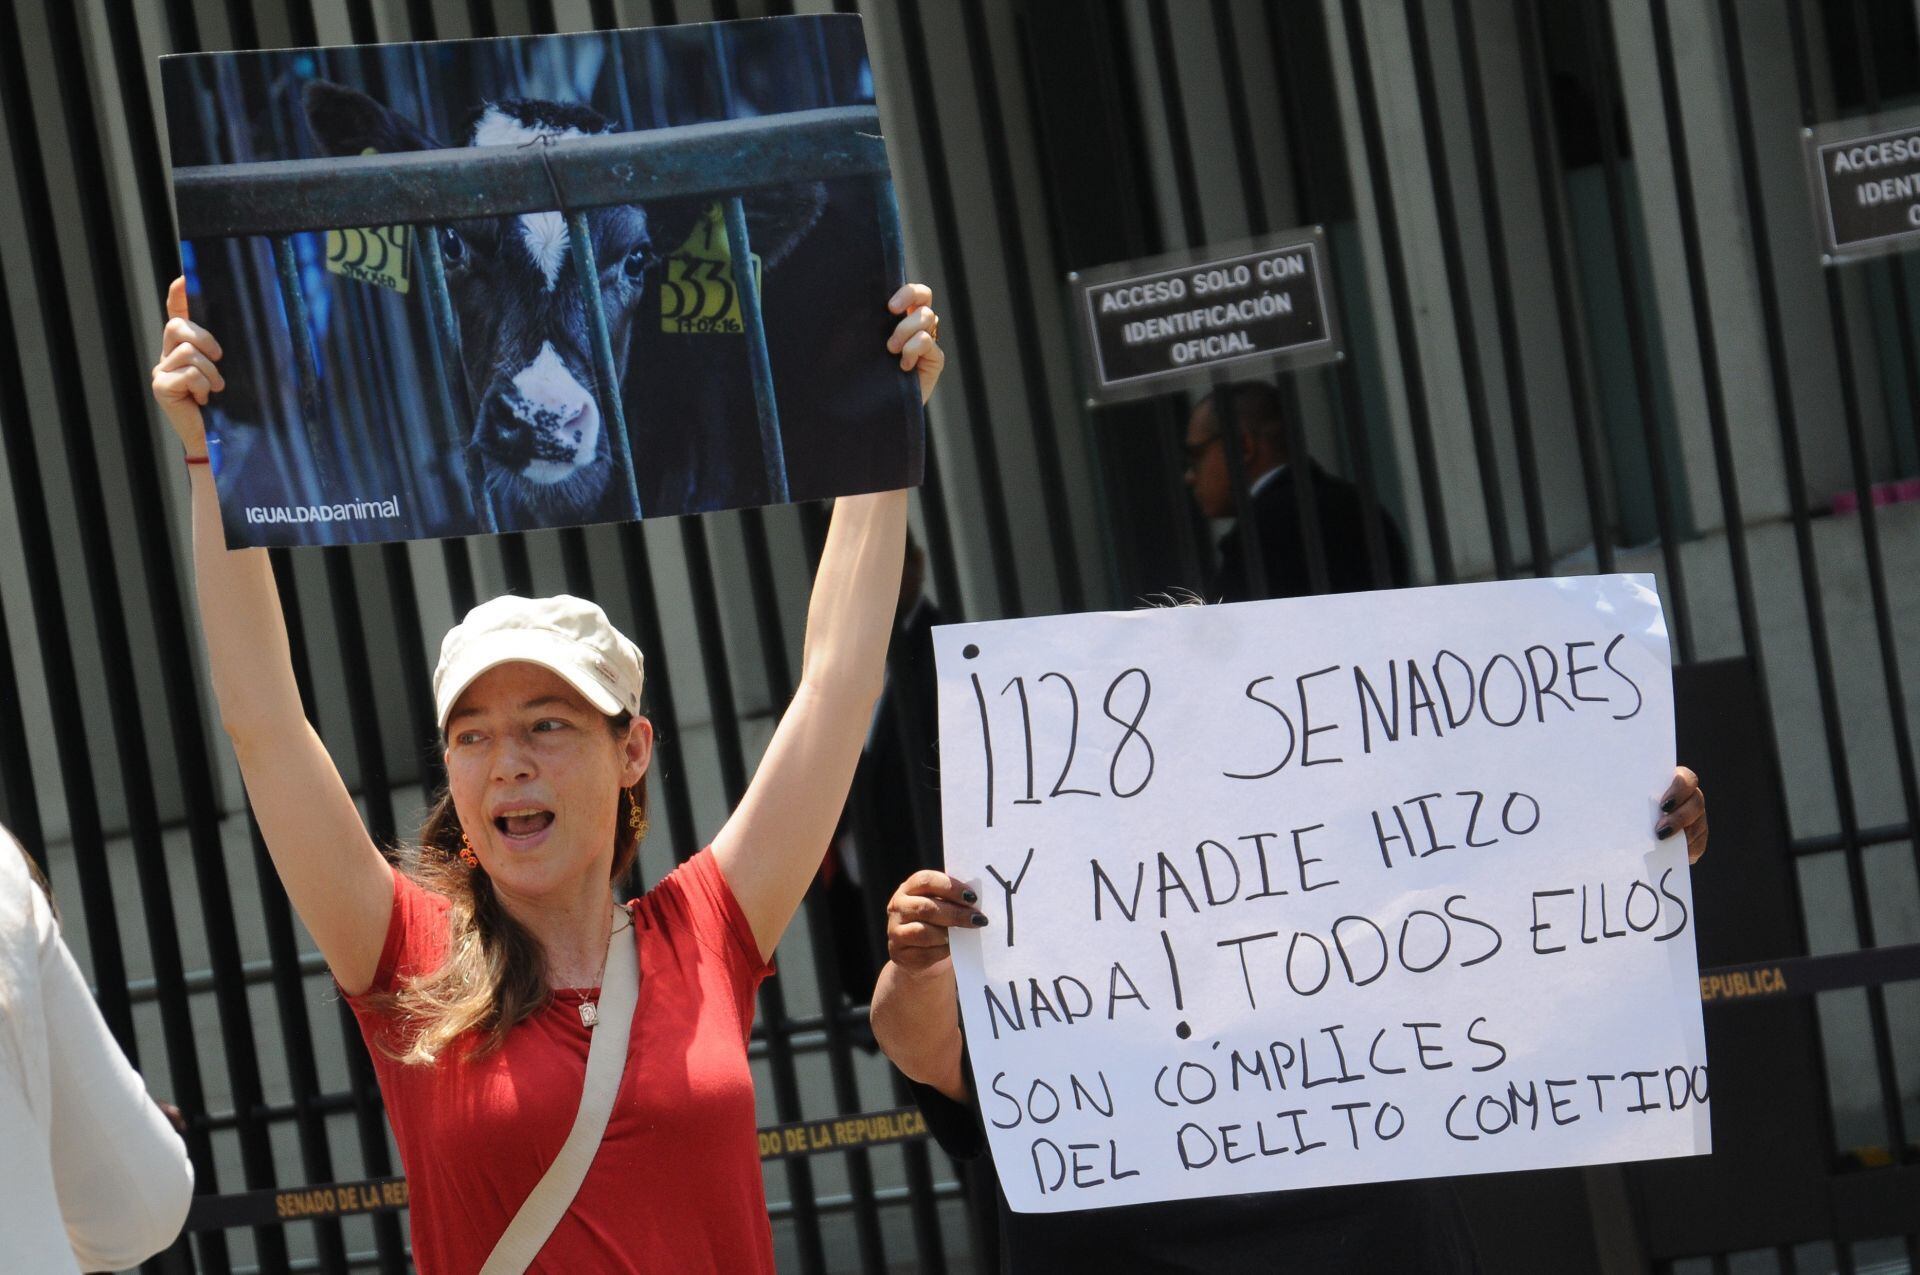 Personas en favor de los derechos de los animales reclamaron a los senadores no haber detenido al morenista Adolfo González por realizar el sacrificio de una gallina en el Senado.